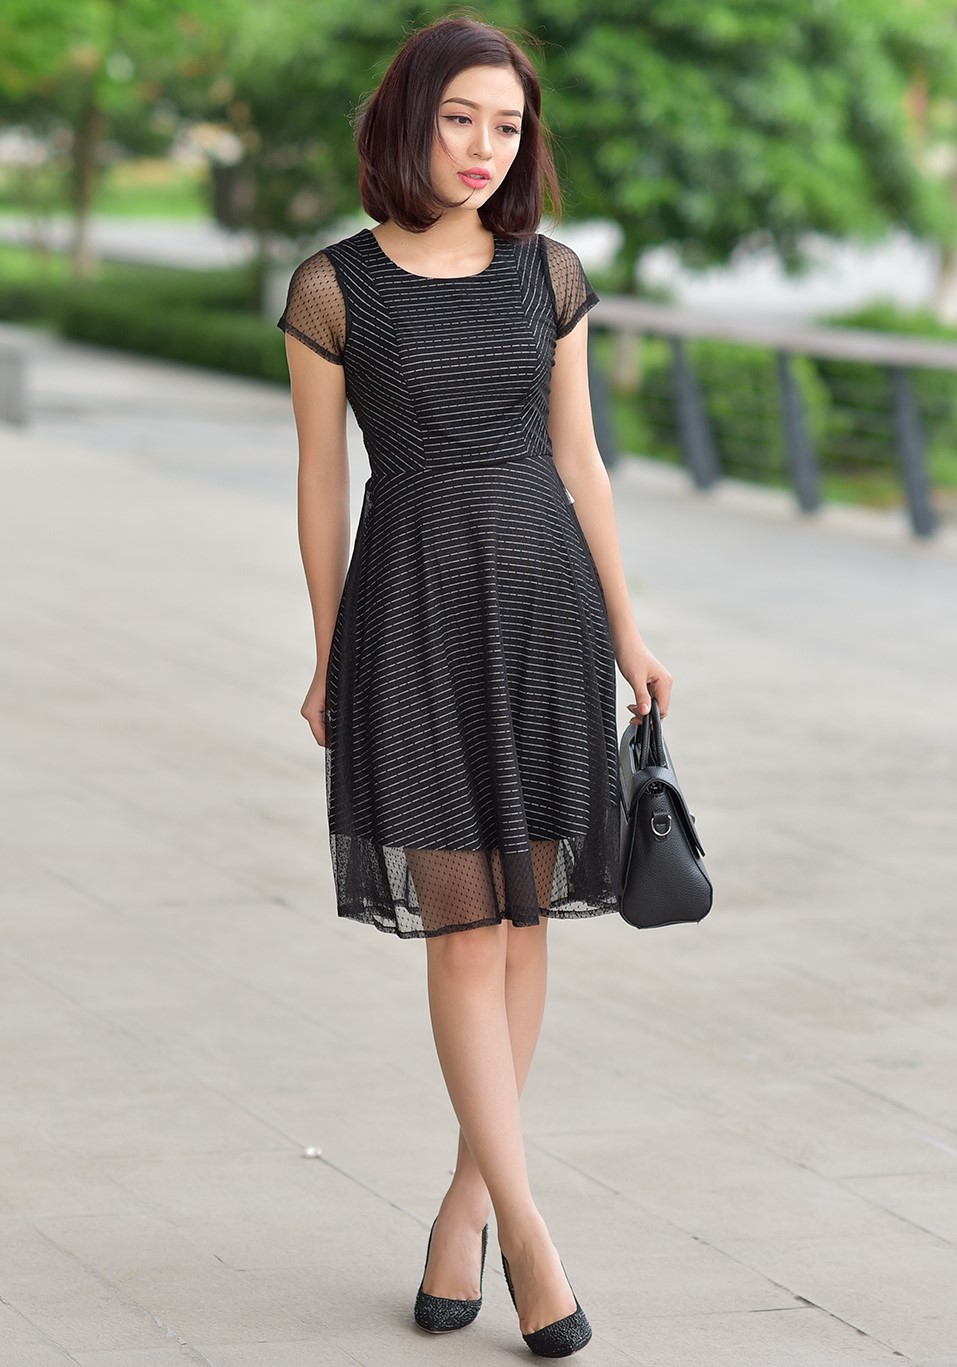 Đầm váy nữ bẹt vai body siêu tôn dáng 2 màu đen trắng R38 - RyBi giá sỉ,  giá bán buôn - Thị Trường Sỉ